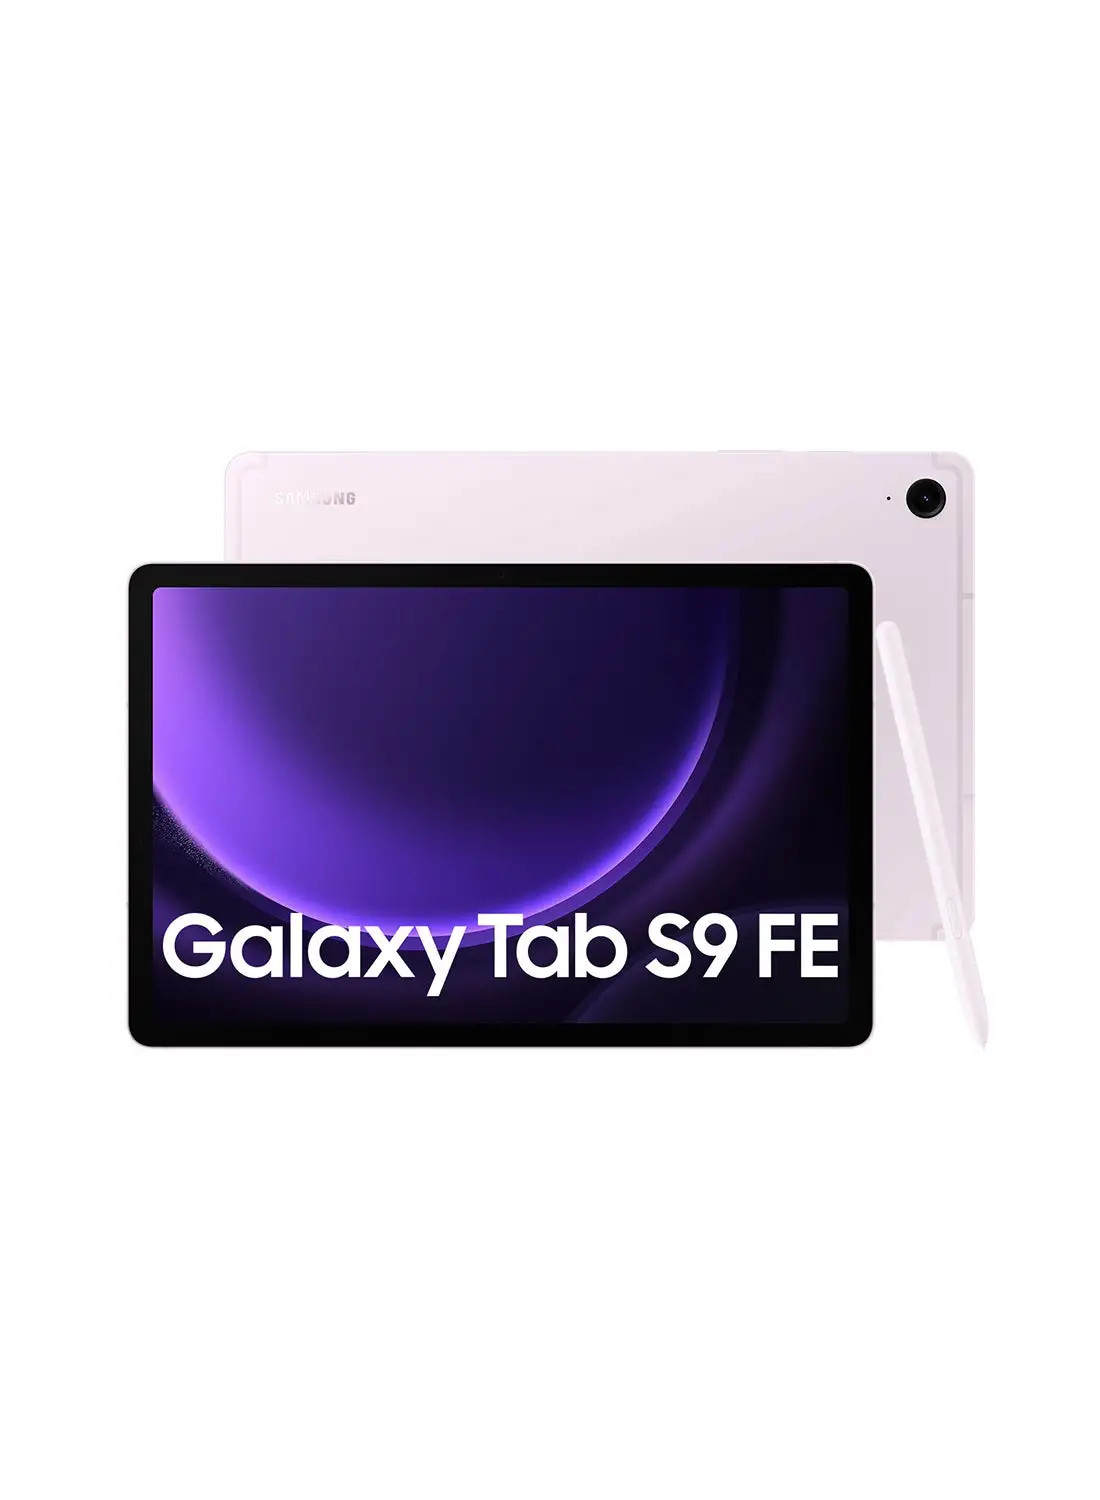 Samsung Galaxy Tab S9 FE Lavender 6GB RAM 128GB Wifi - Middle East Version